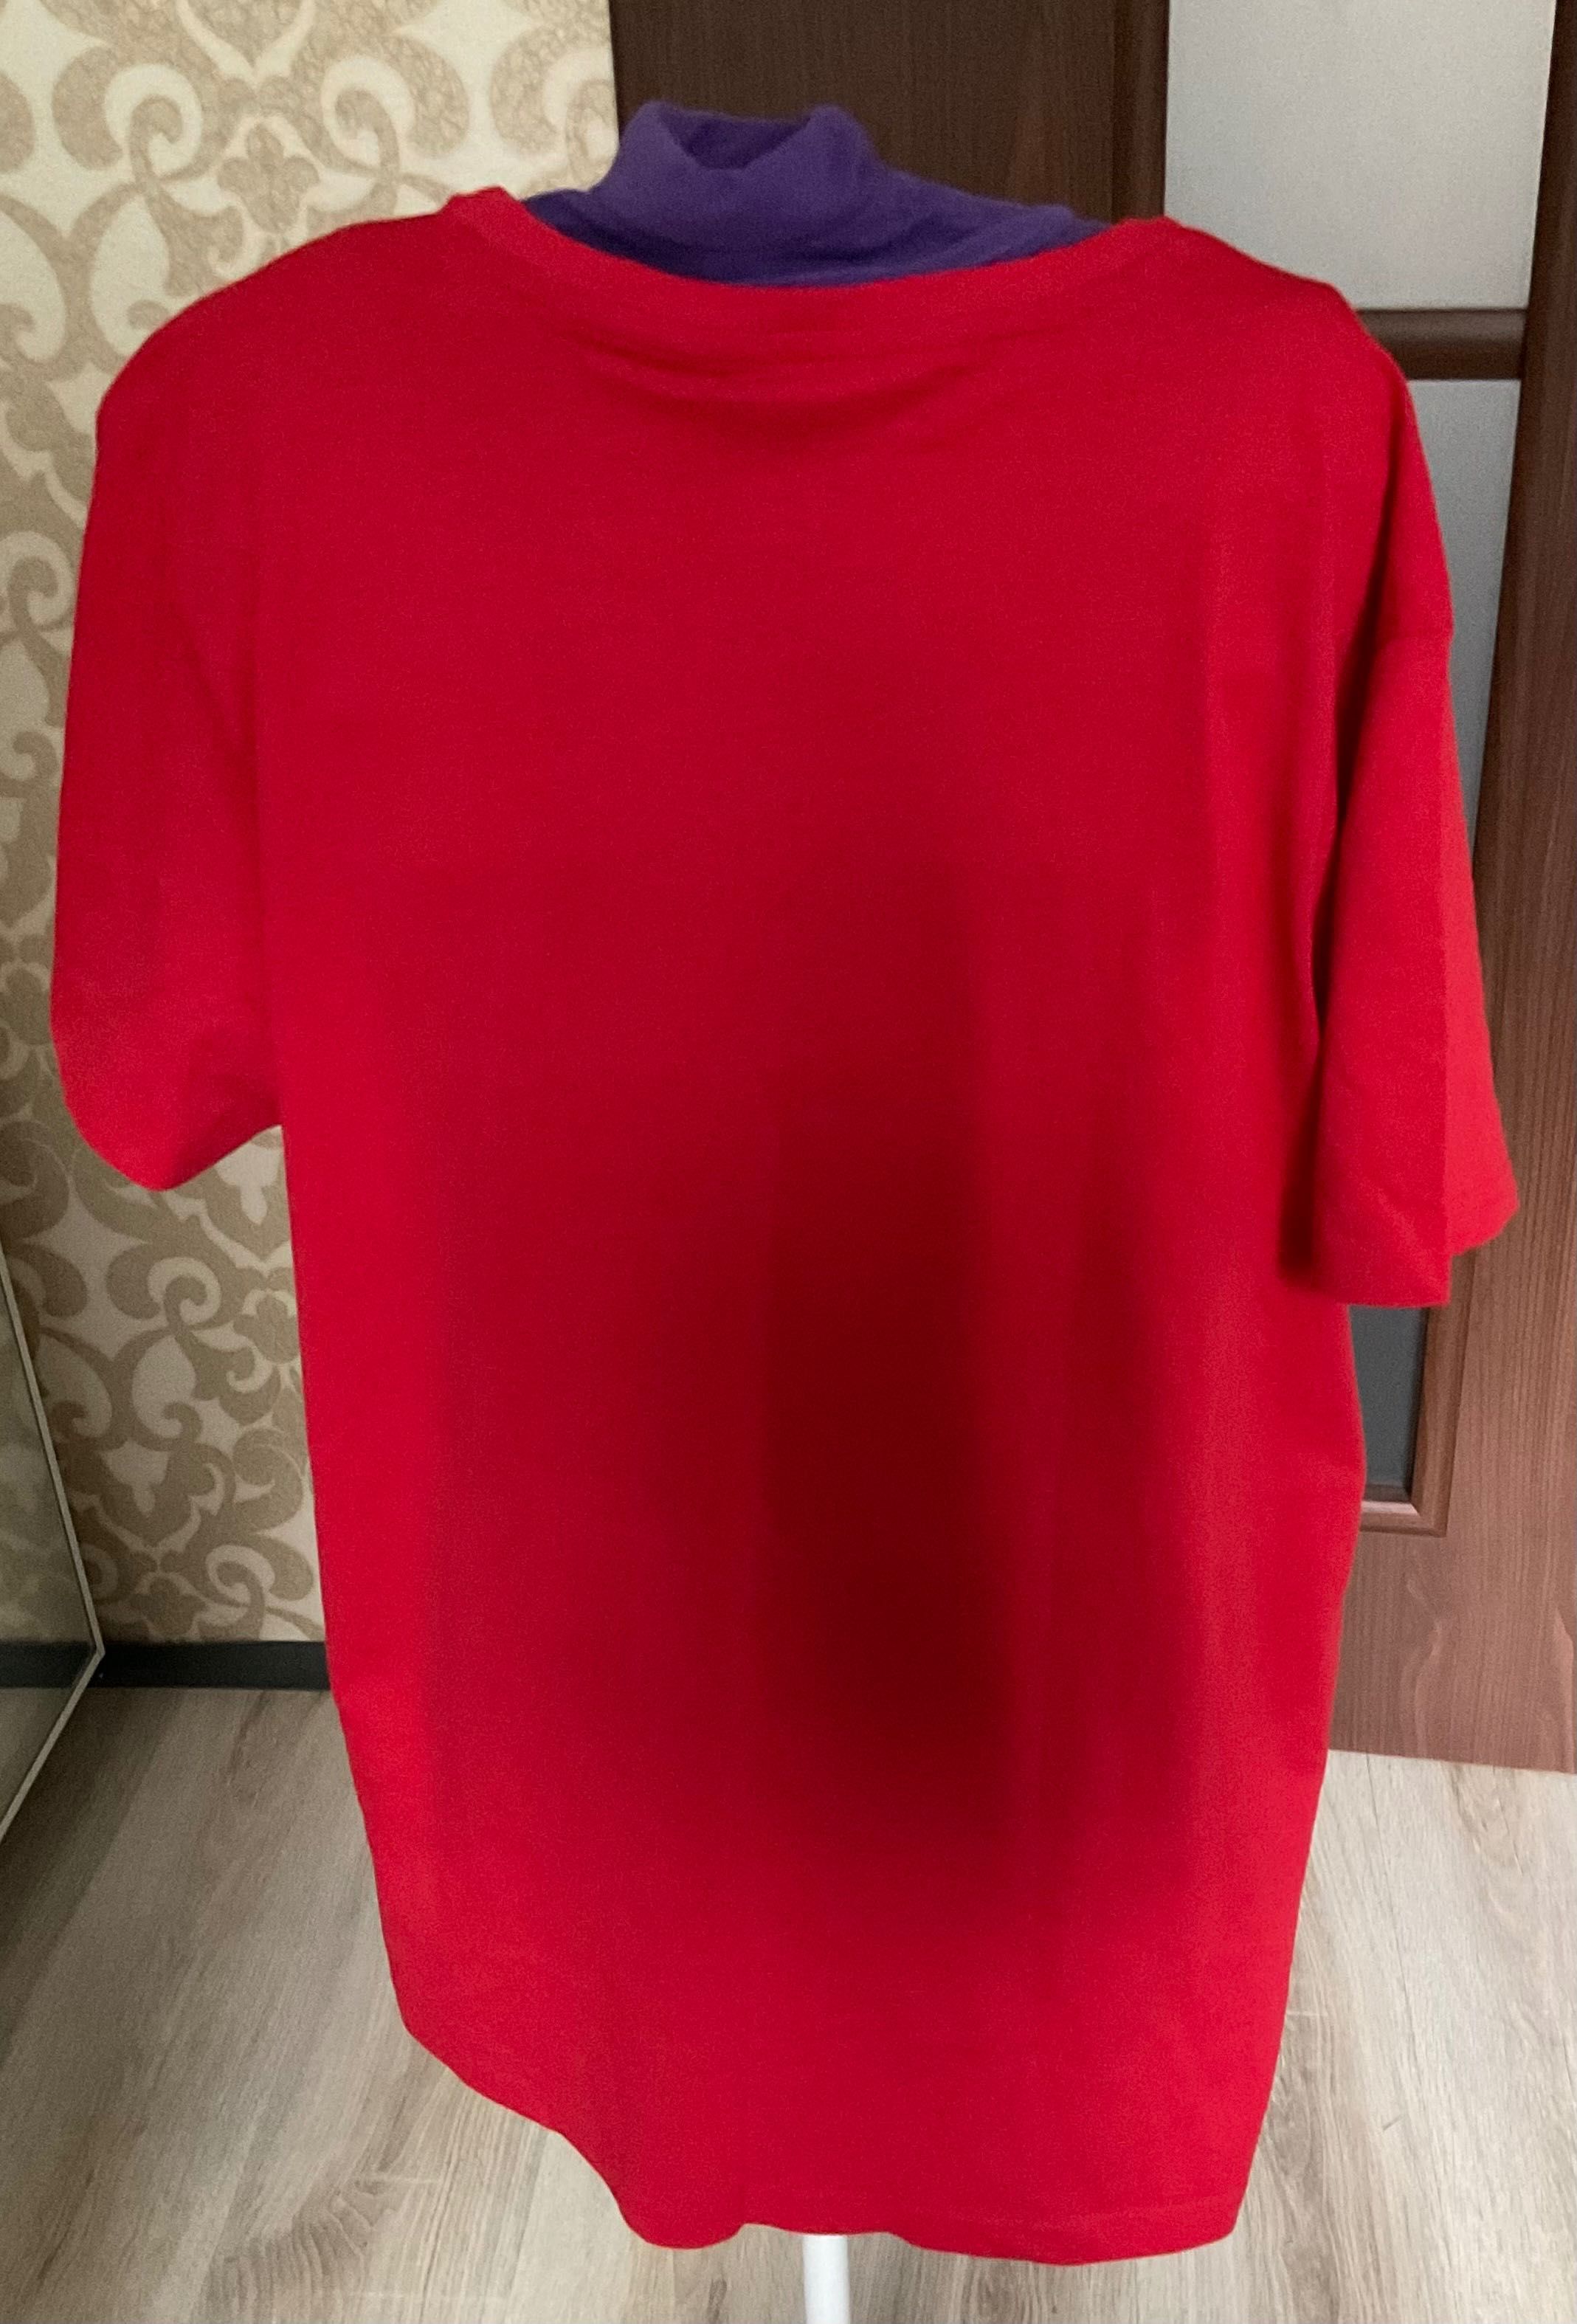 Tom&Rosa męski czerwona  koszulka (T-shirt ) rozmiar XL nowa